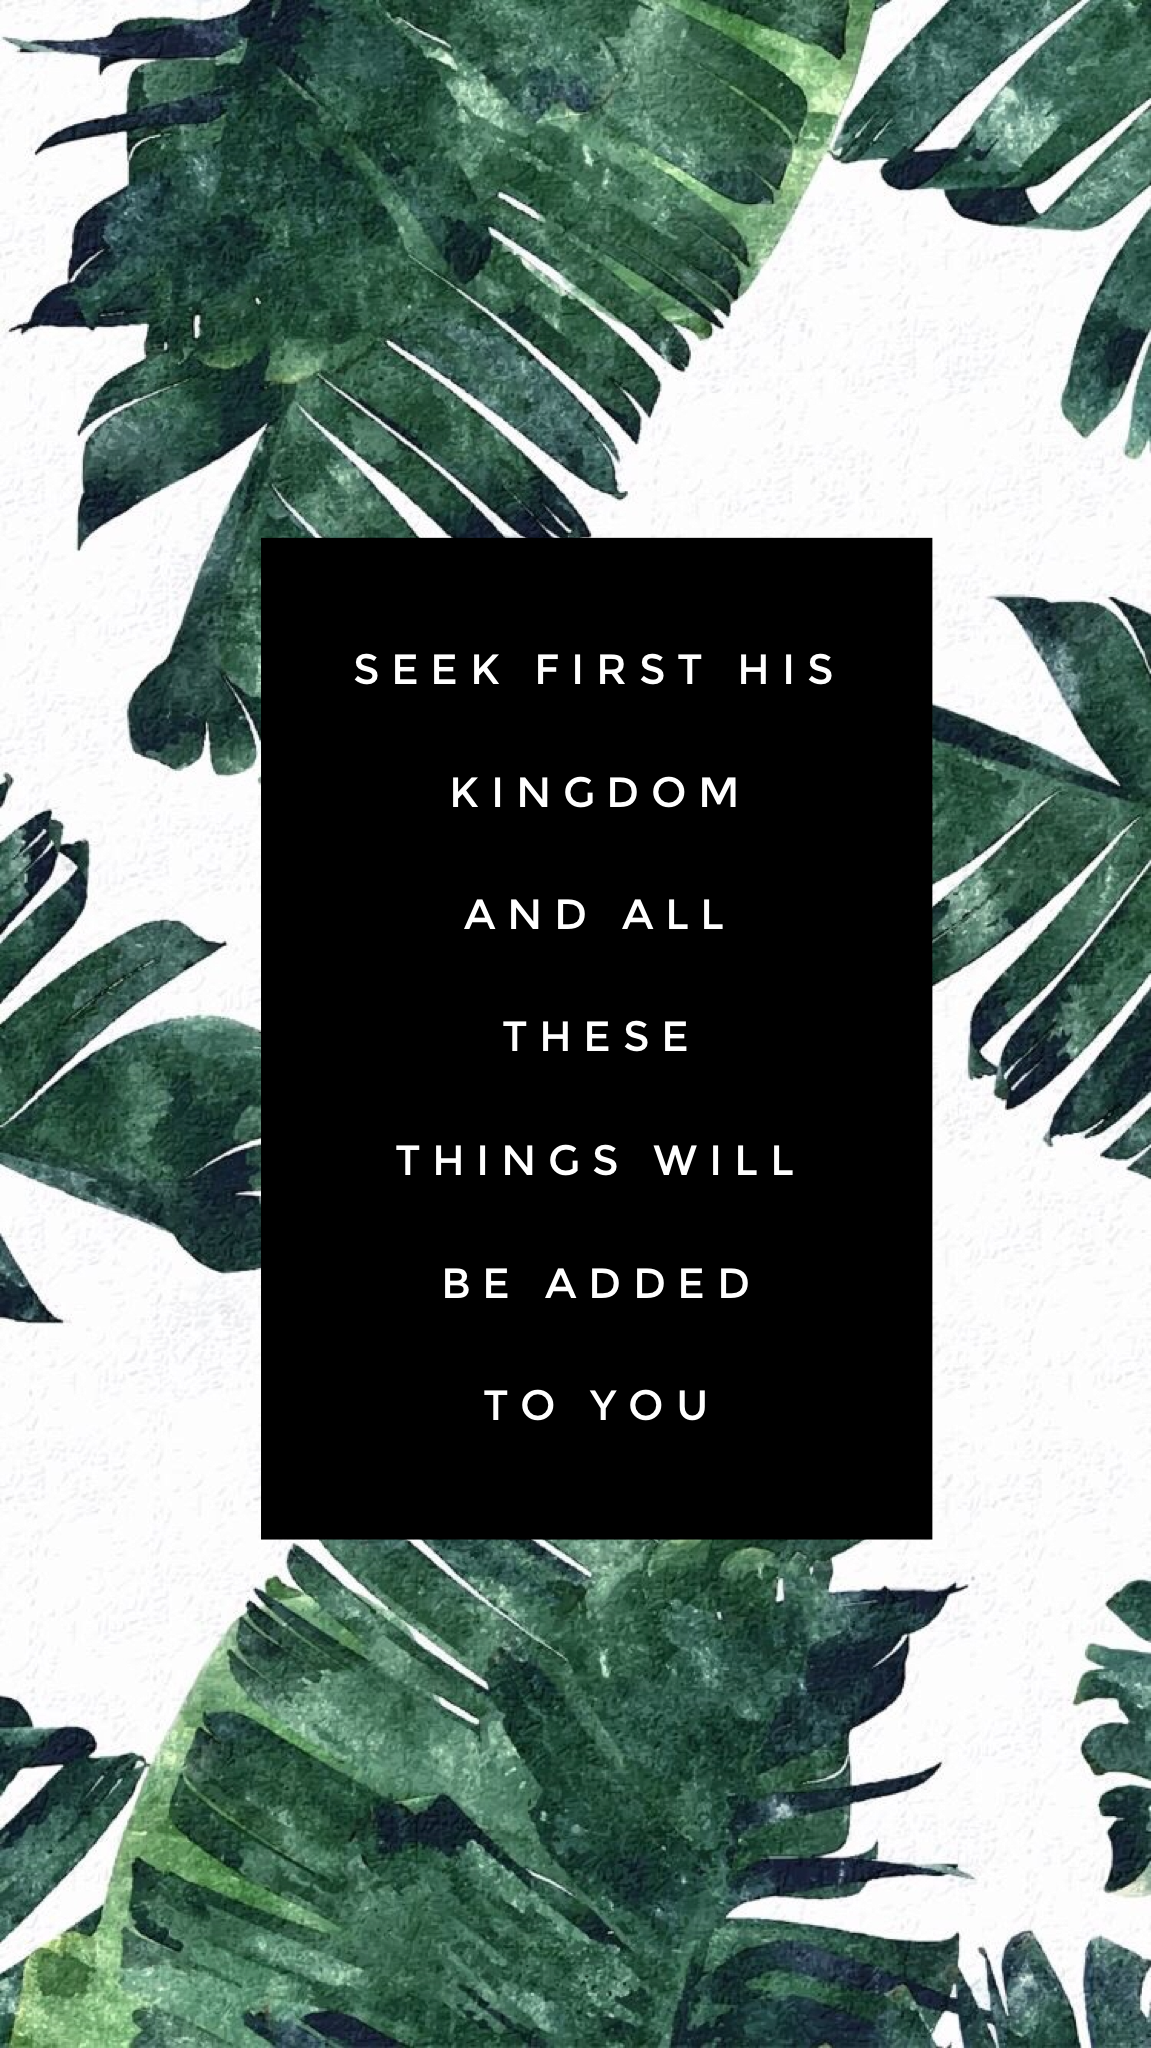 Seek first the Kingdom